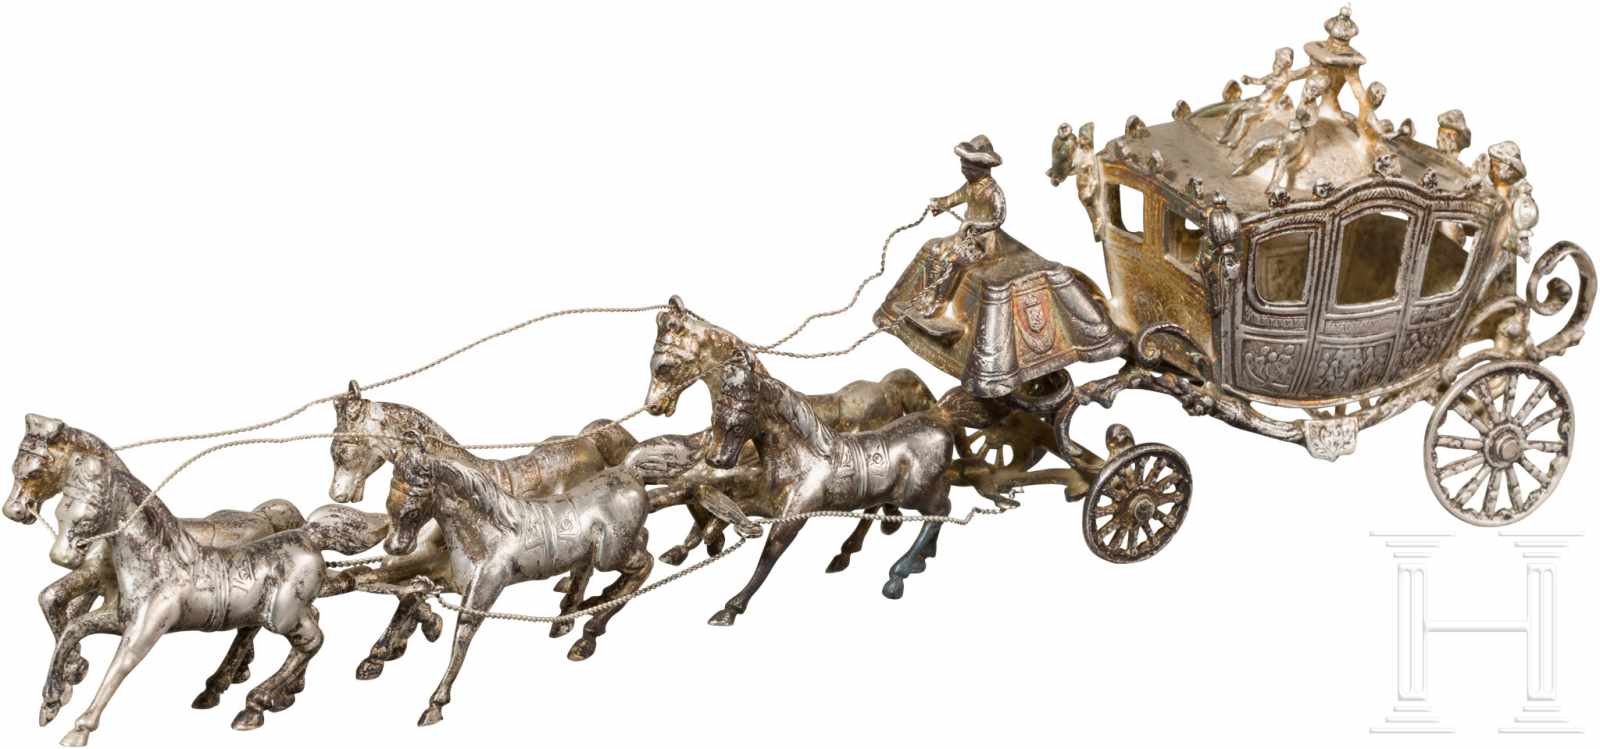 Silbernes Modell einer sechspännigen, herrschaftlichen Kutsche, 19. Jhdt.Alle Teile in Silber